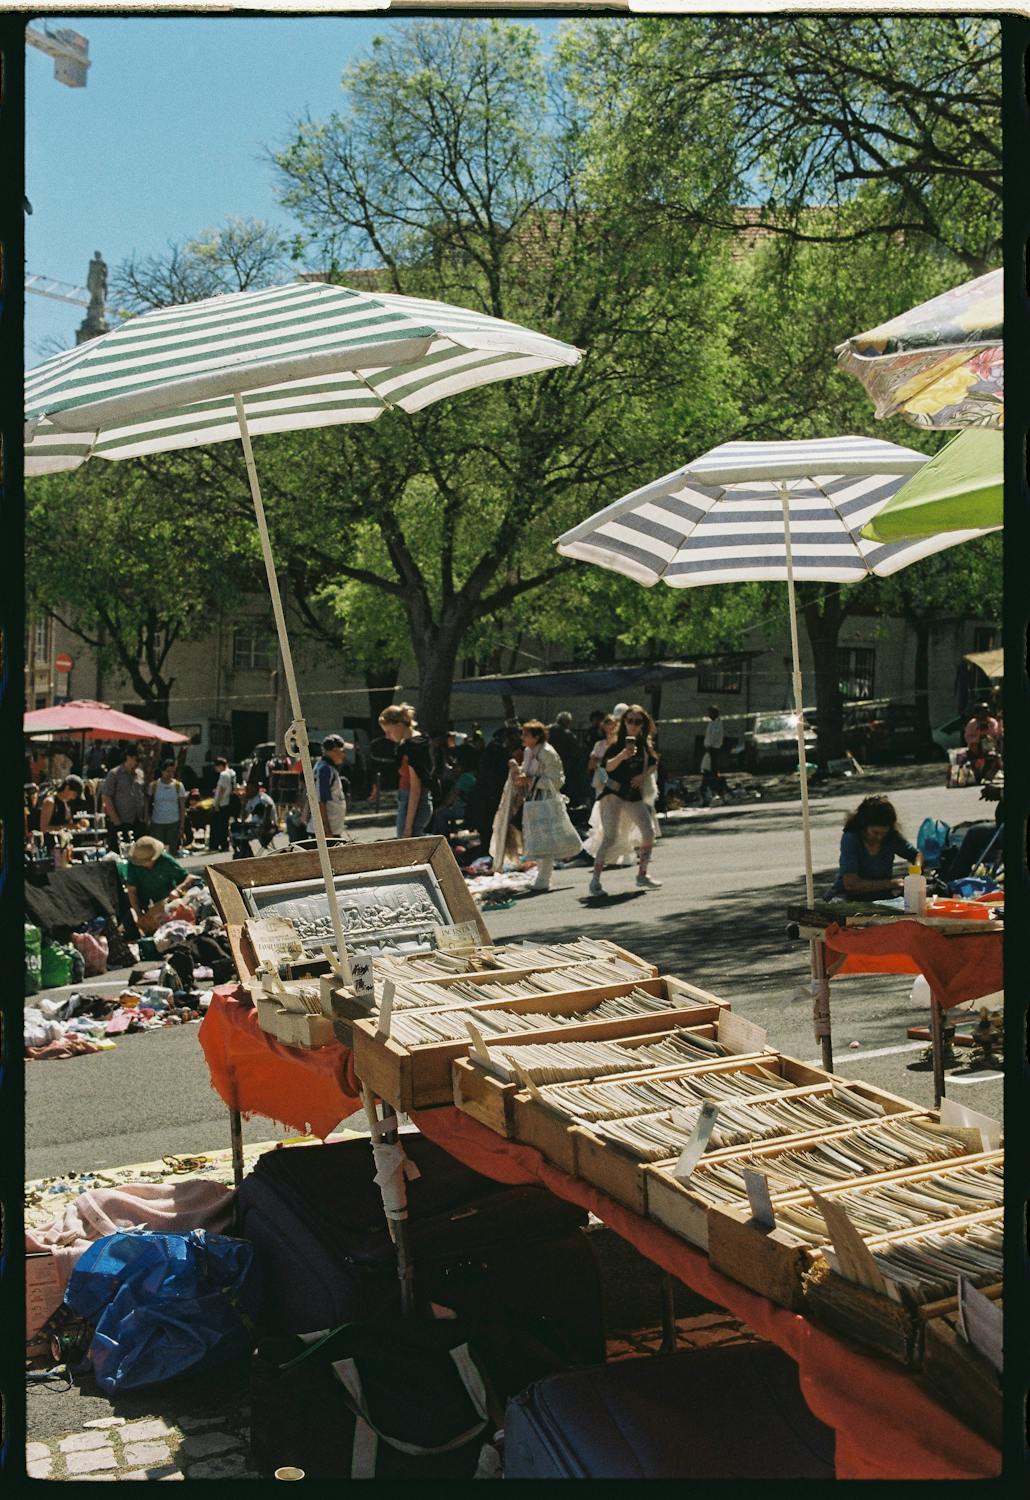 Bazaar in Town · Free Stock Photo